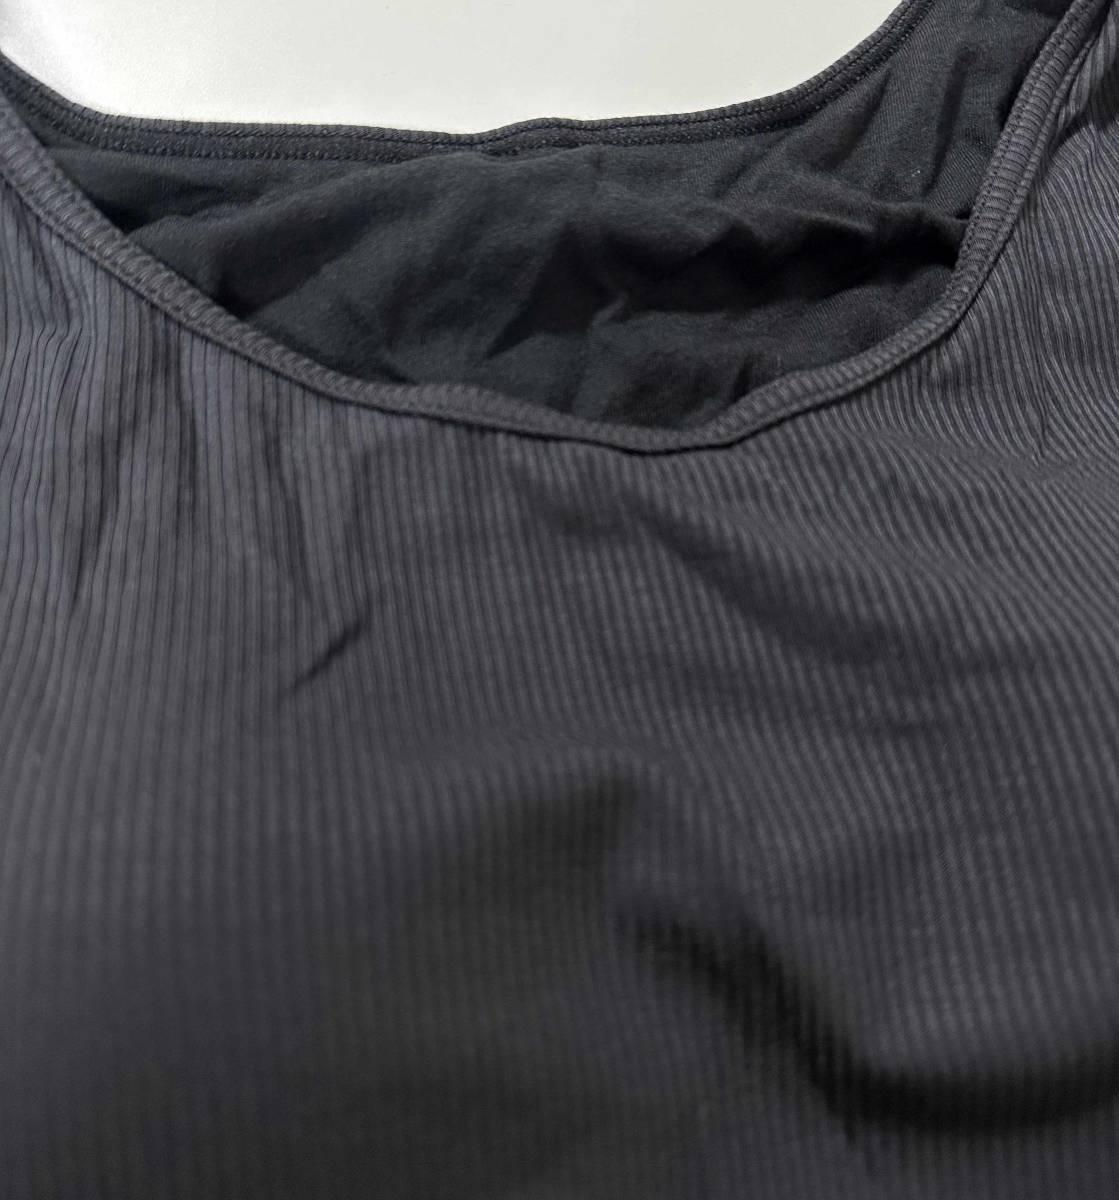 新品 2枚 L ★ ATSUGI アツギ Tシャツ ブラ リブ 2分袖 ブラック グレージュ ノンワイヤー インナー 肌着 下着 カップ付き Tシャツ ブラ